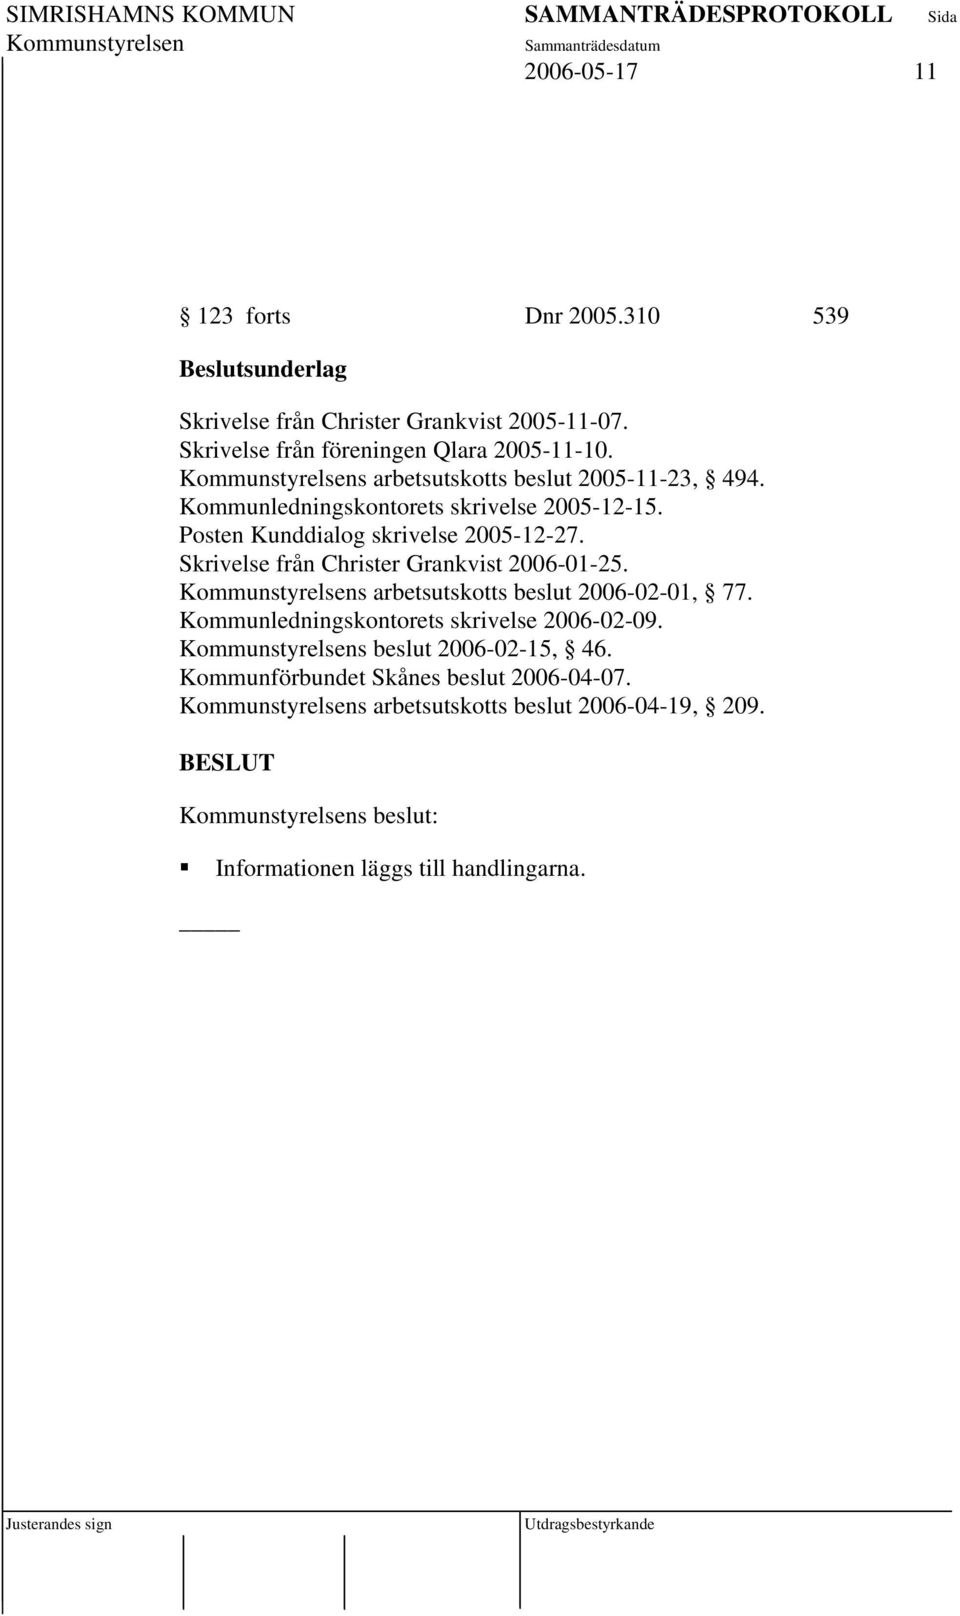 Posten Kunddialog skrivelse 2005-12-27. Skrivelse från Christer Grankvist 2006-01-25. s arbetsutskotts beslut 2006-02-01, 77.